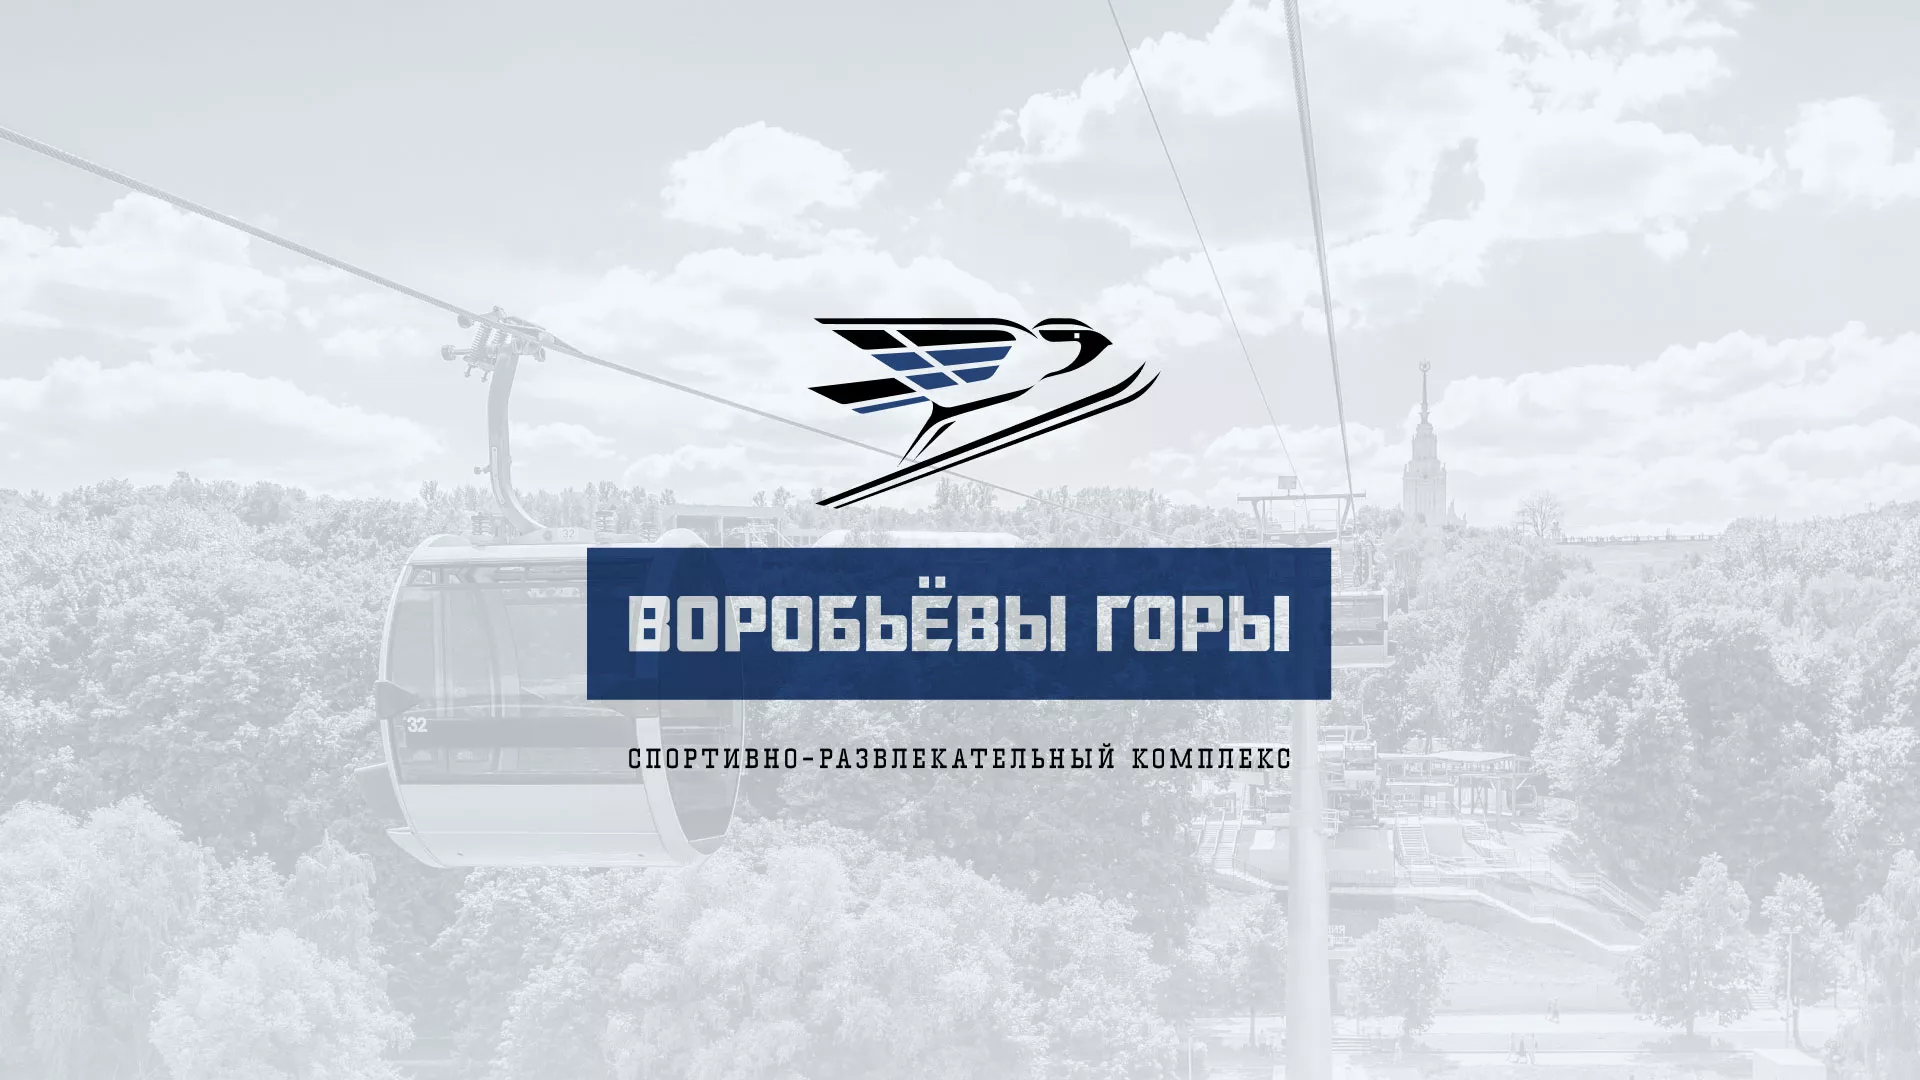 Разработка сайта в Зарайске для спортивно-развлекательного комплекса «Воробьёвы горы»